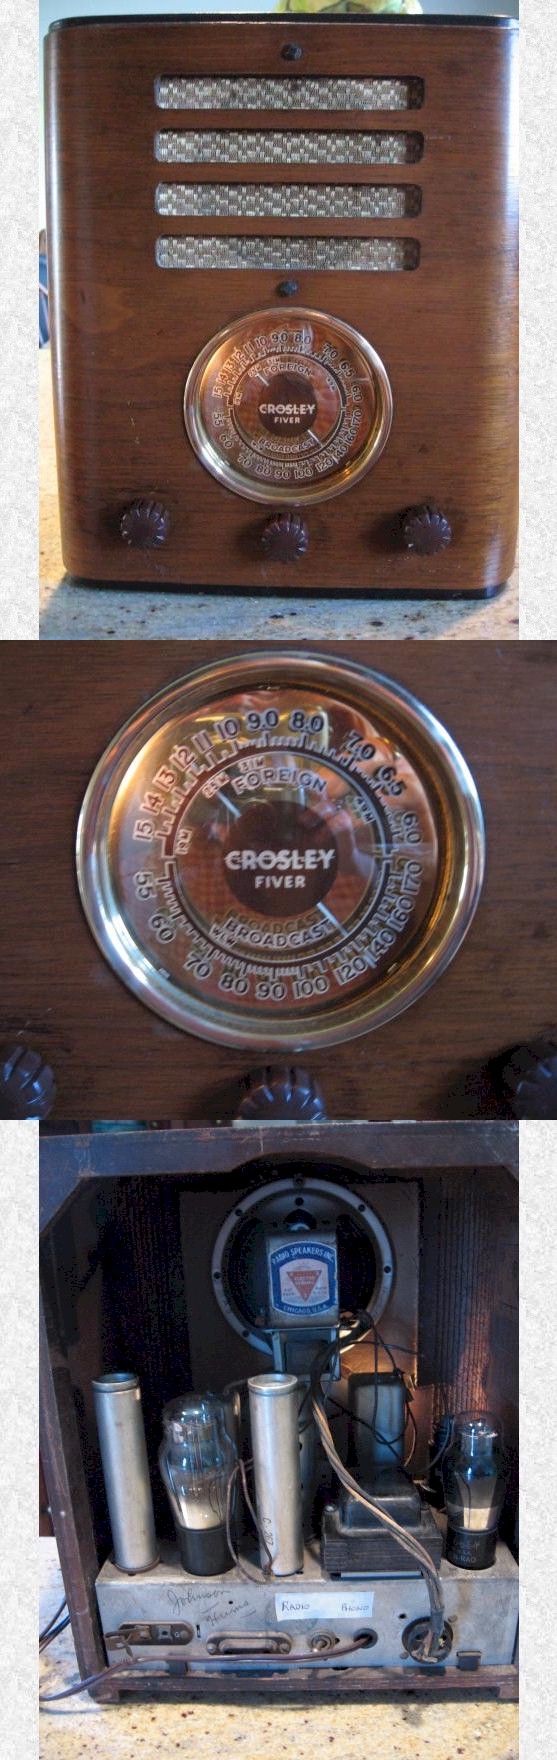 Crosley Fiver Deluxe 